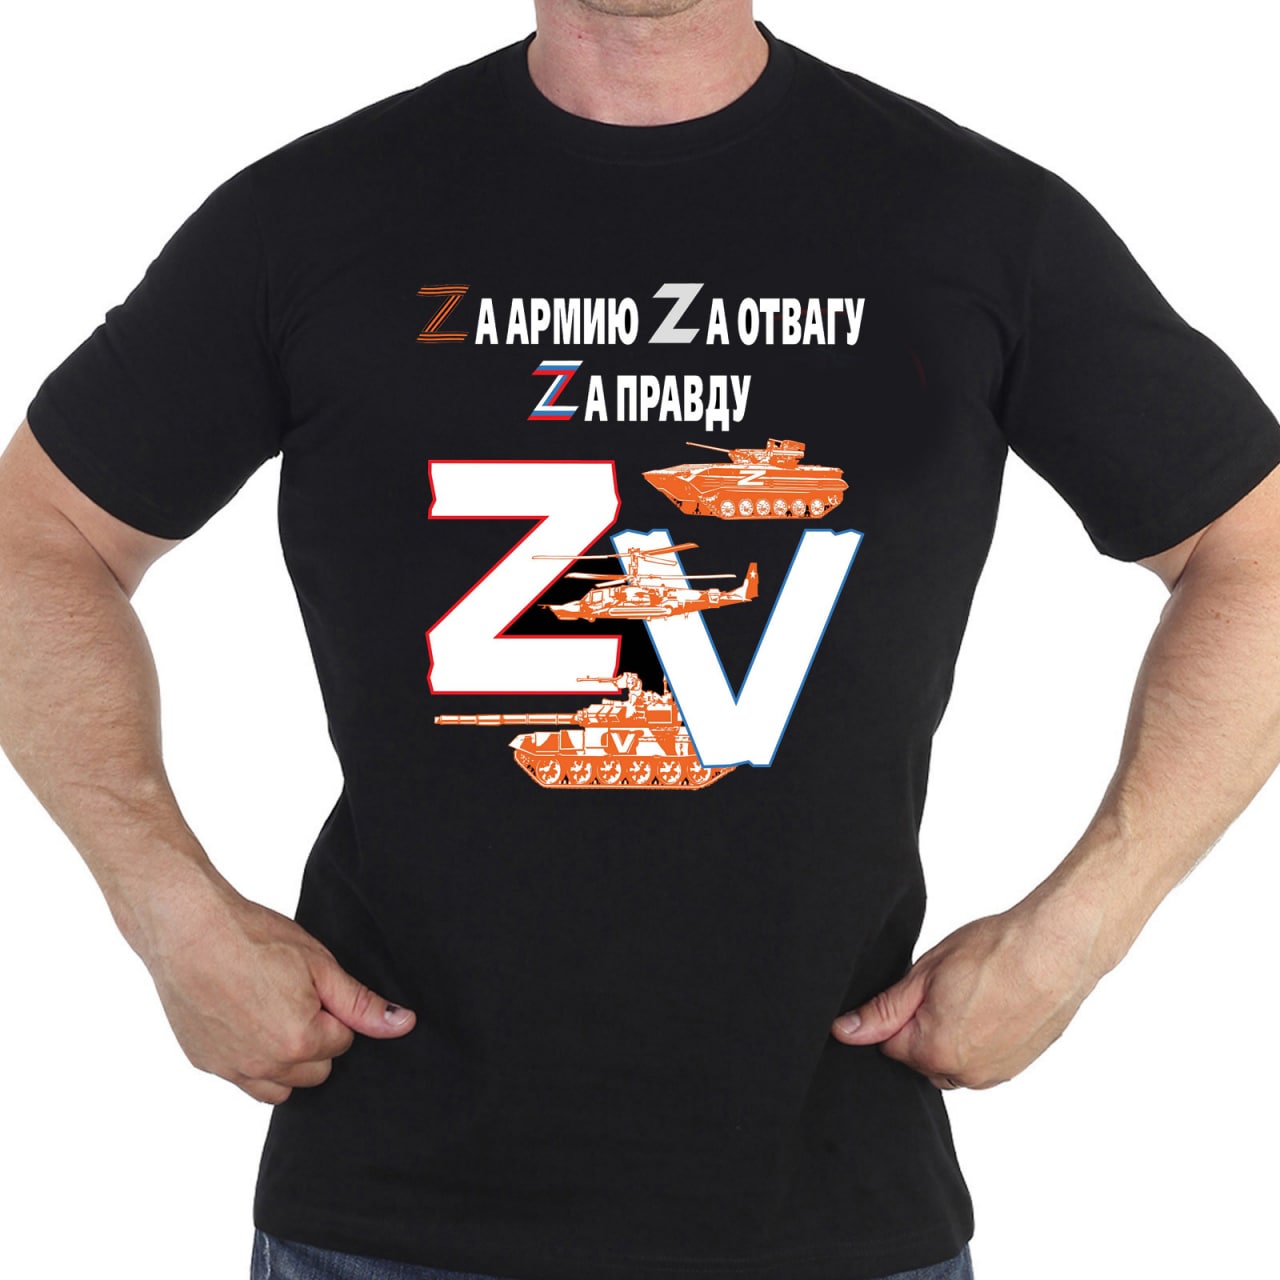 Купить мужскую футболку "Zа правду!"